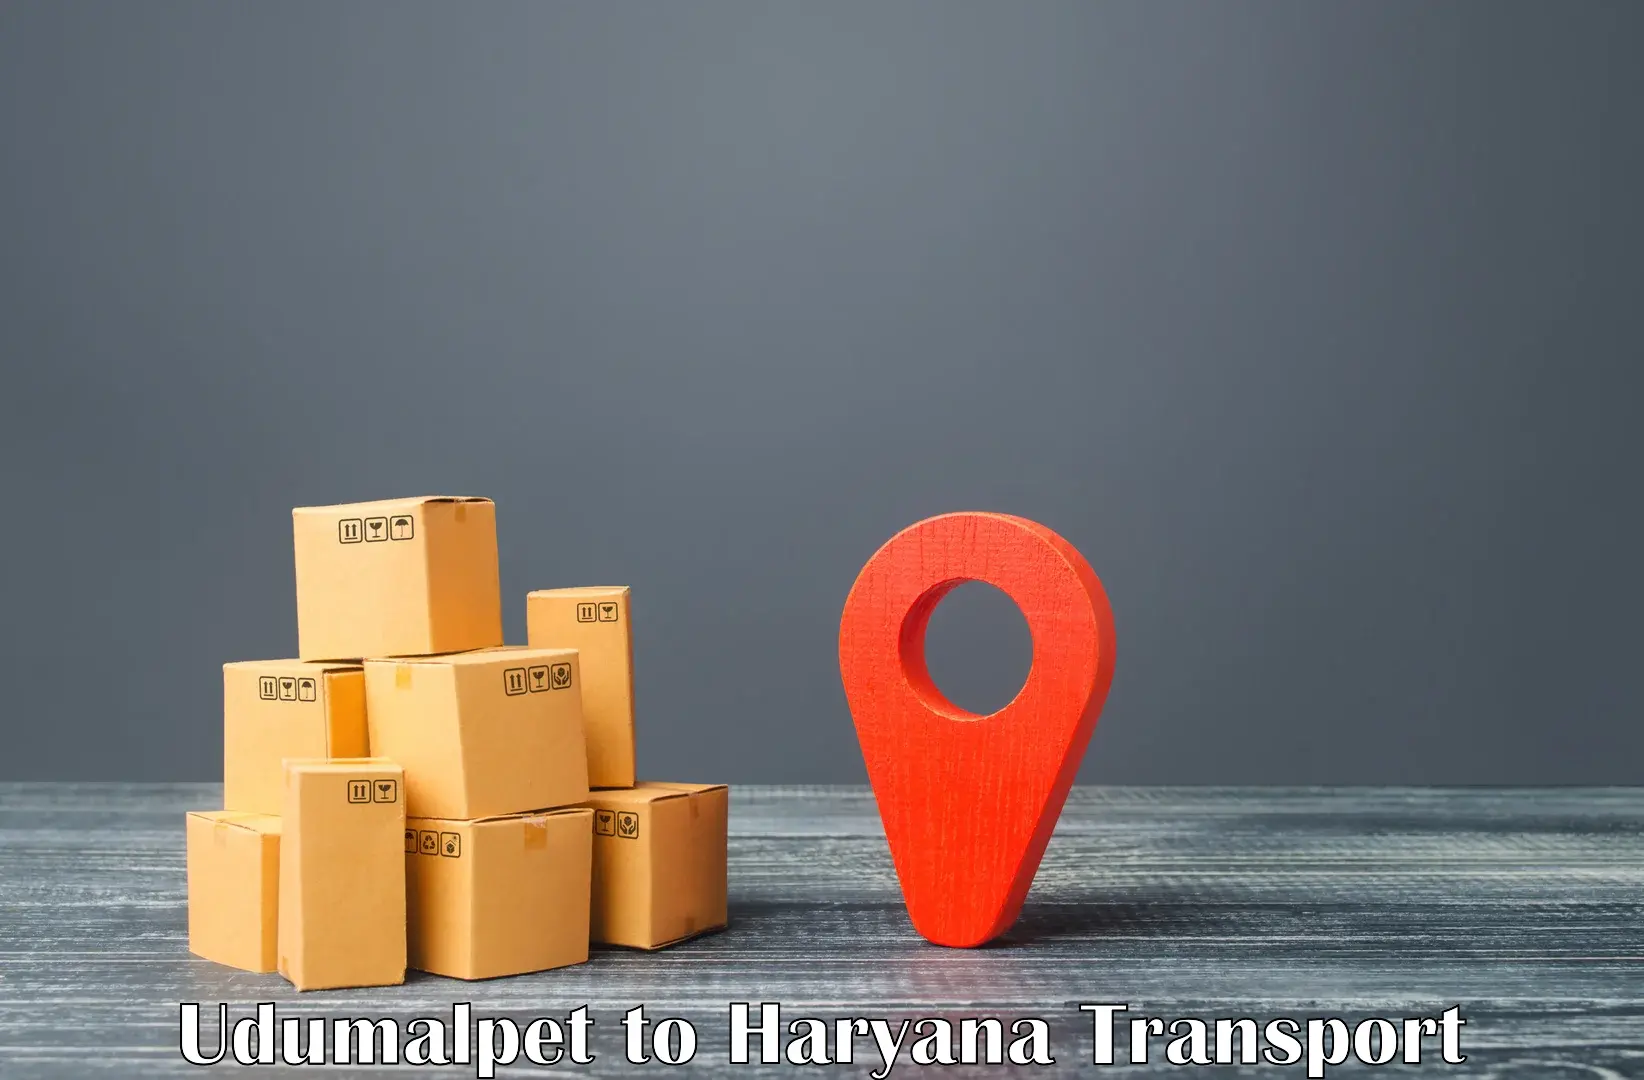 Vehicle parcel service Udumalpet to Narwana